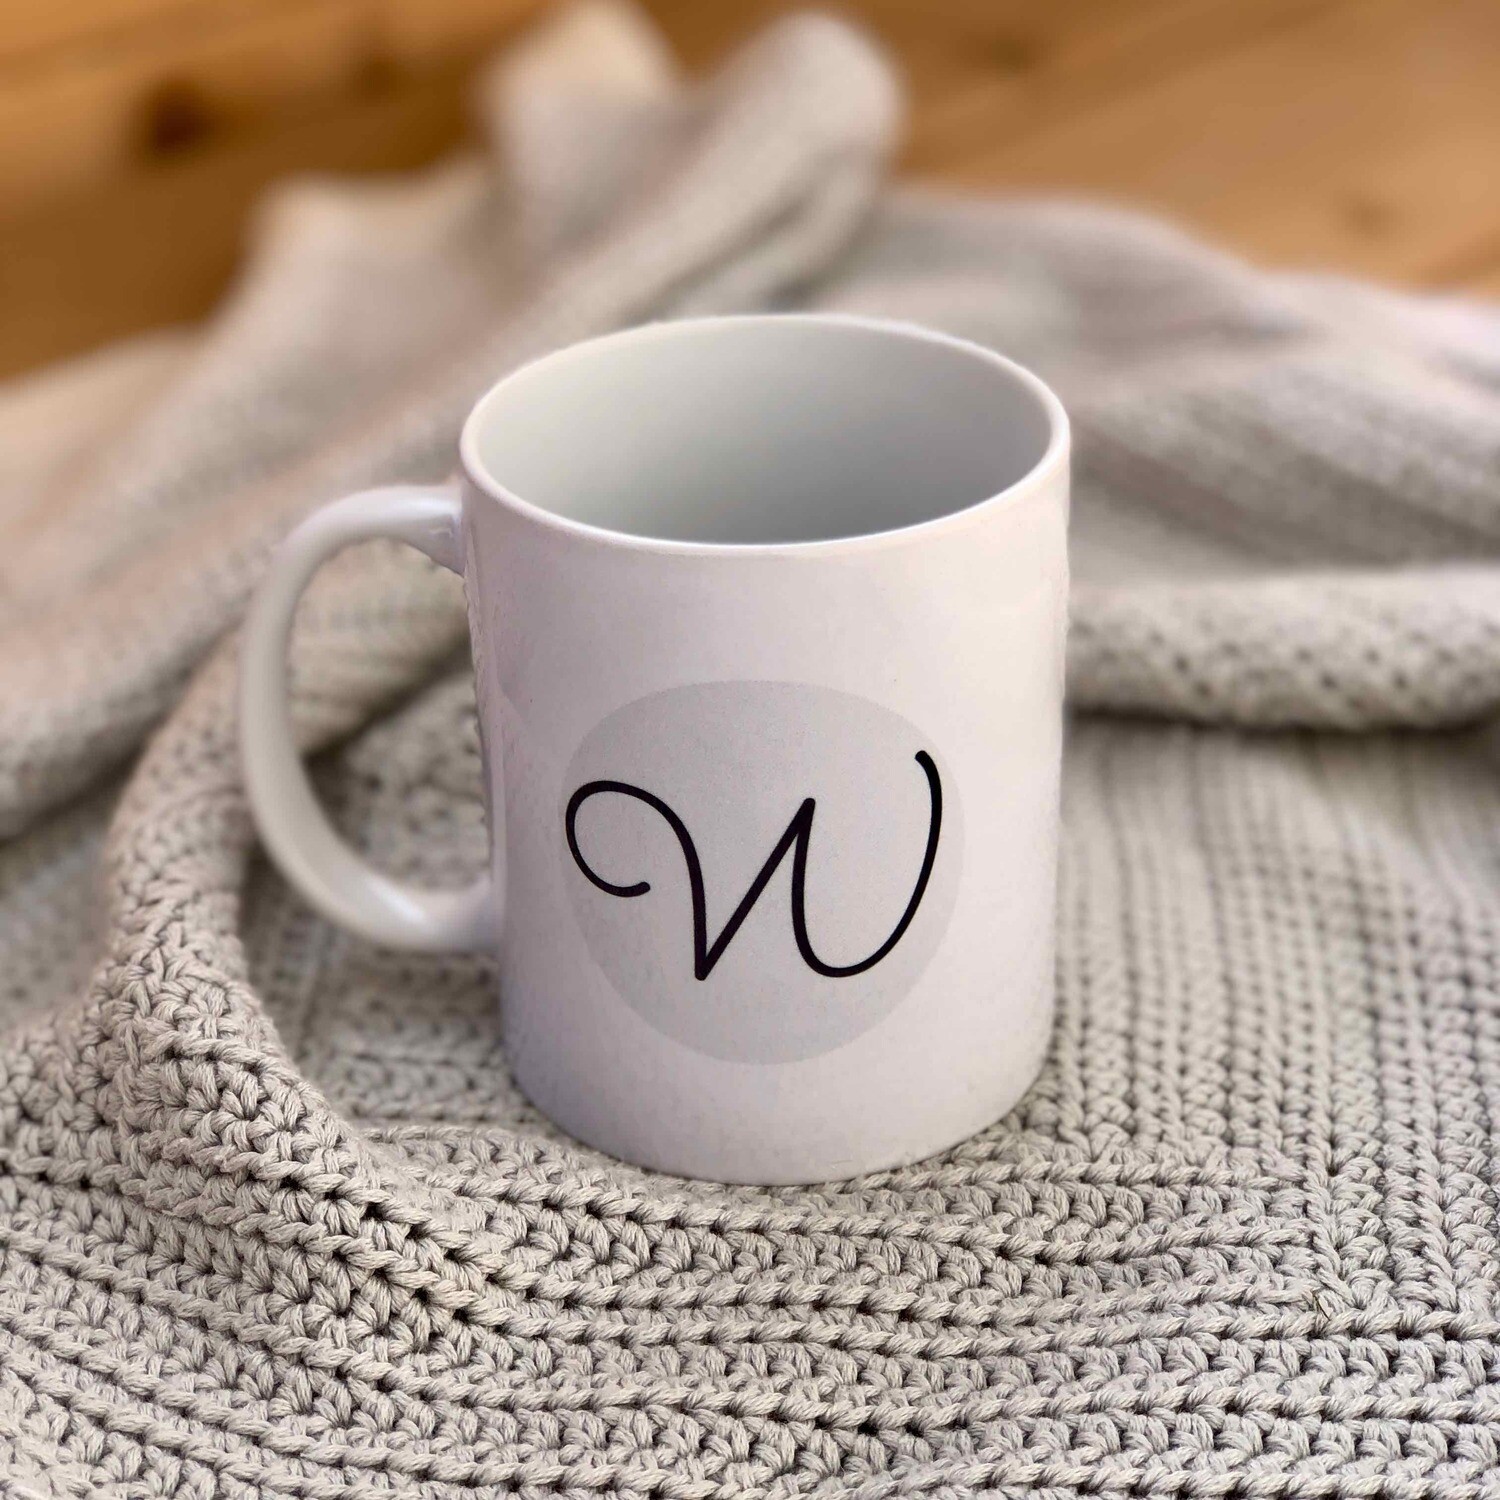 Woolpedia mug